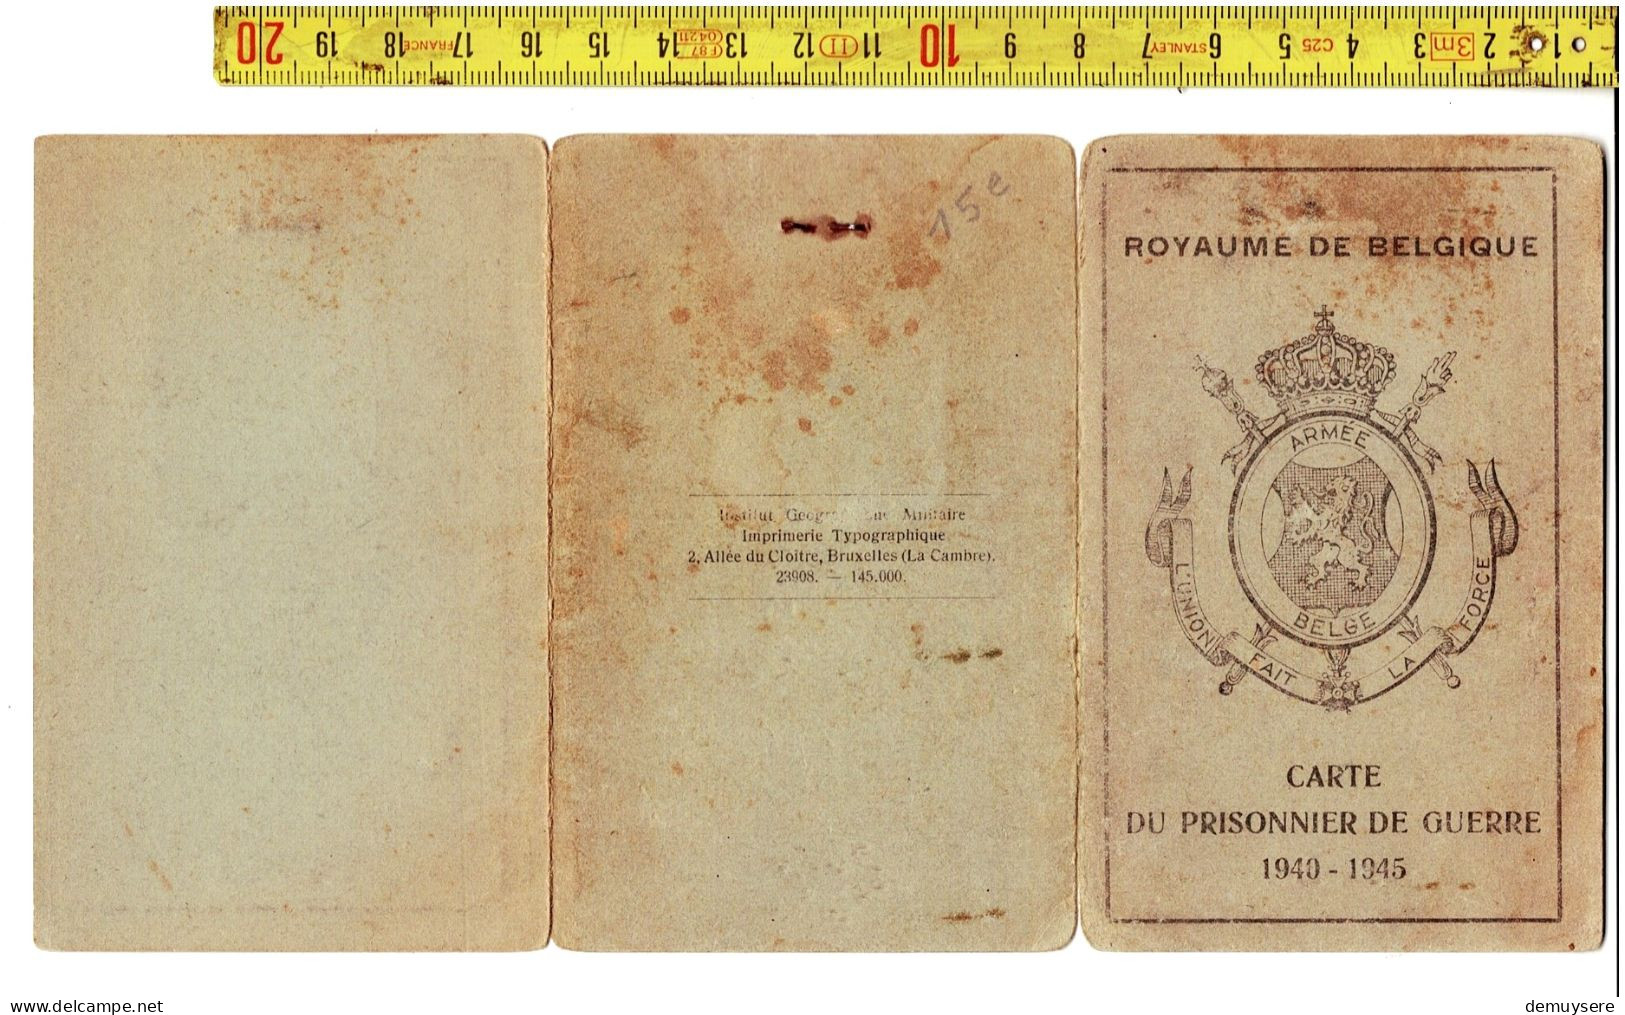 KL 5300 - ROYAUME DE BELGIQUE - CARTE DU PRISONNIER DE GUERRE 1940-1945 - BRUYNEEL GUSTAVE - PITTHEM - Dokumente